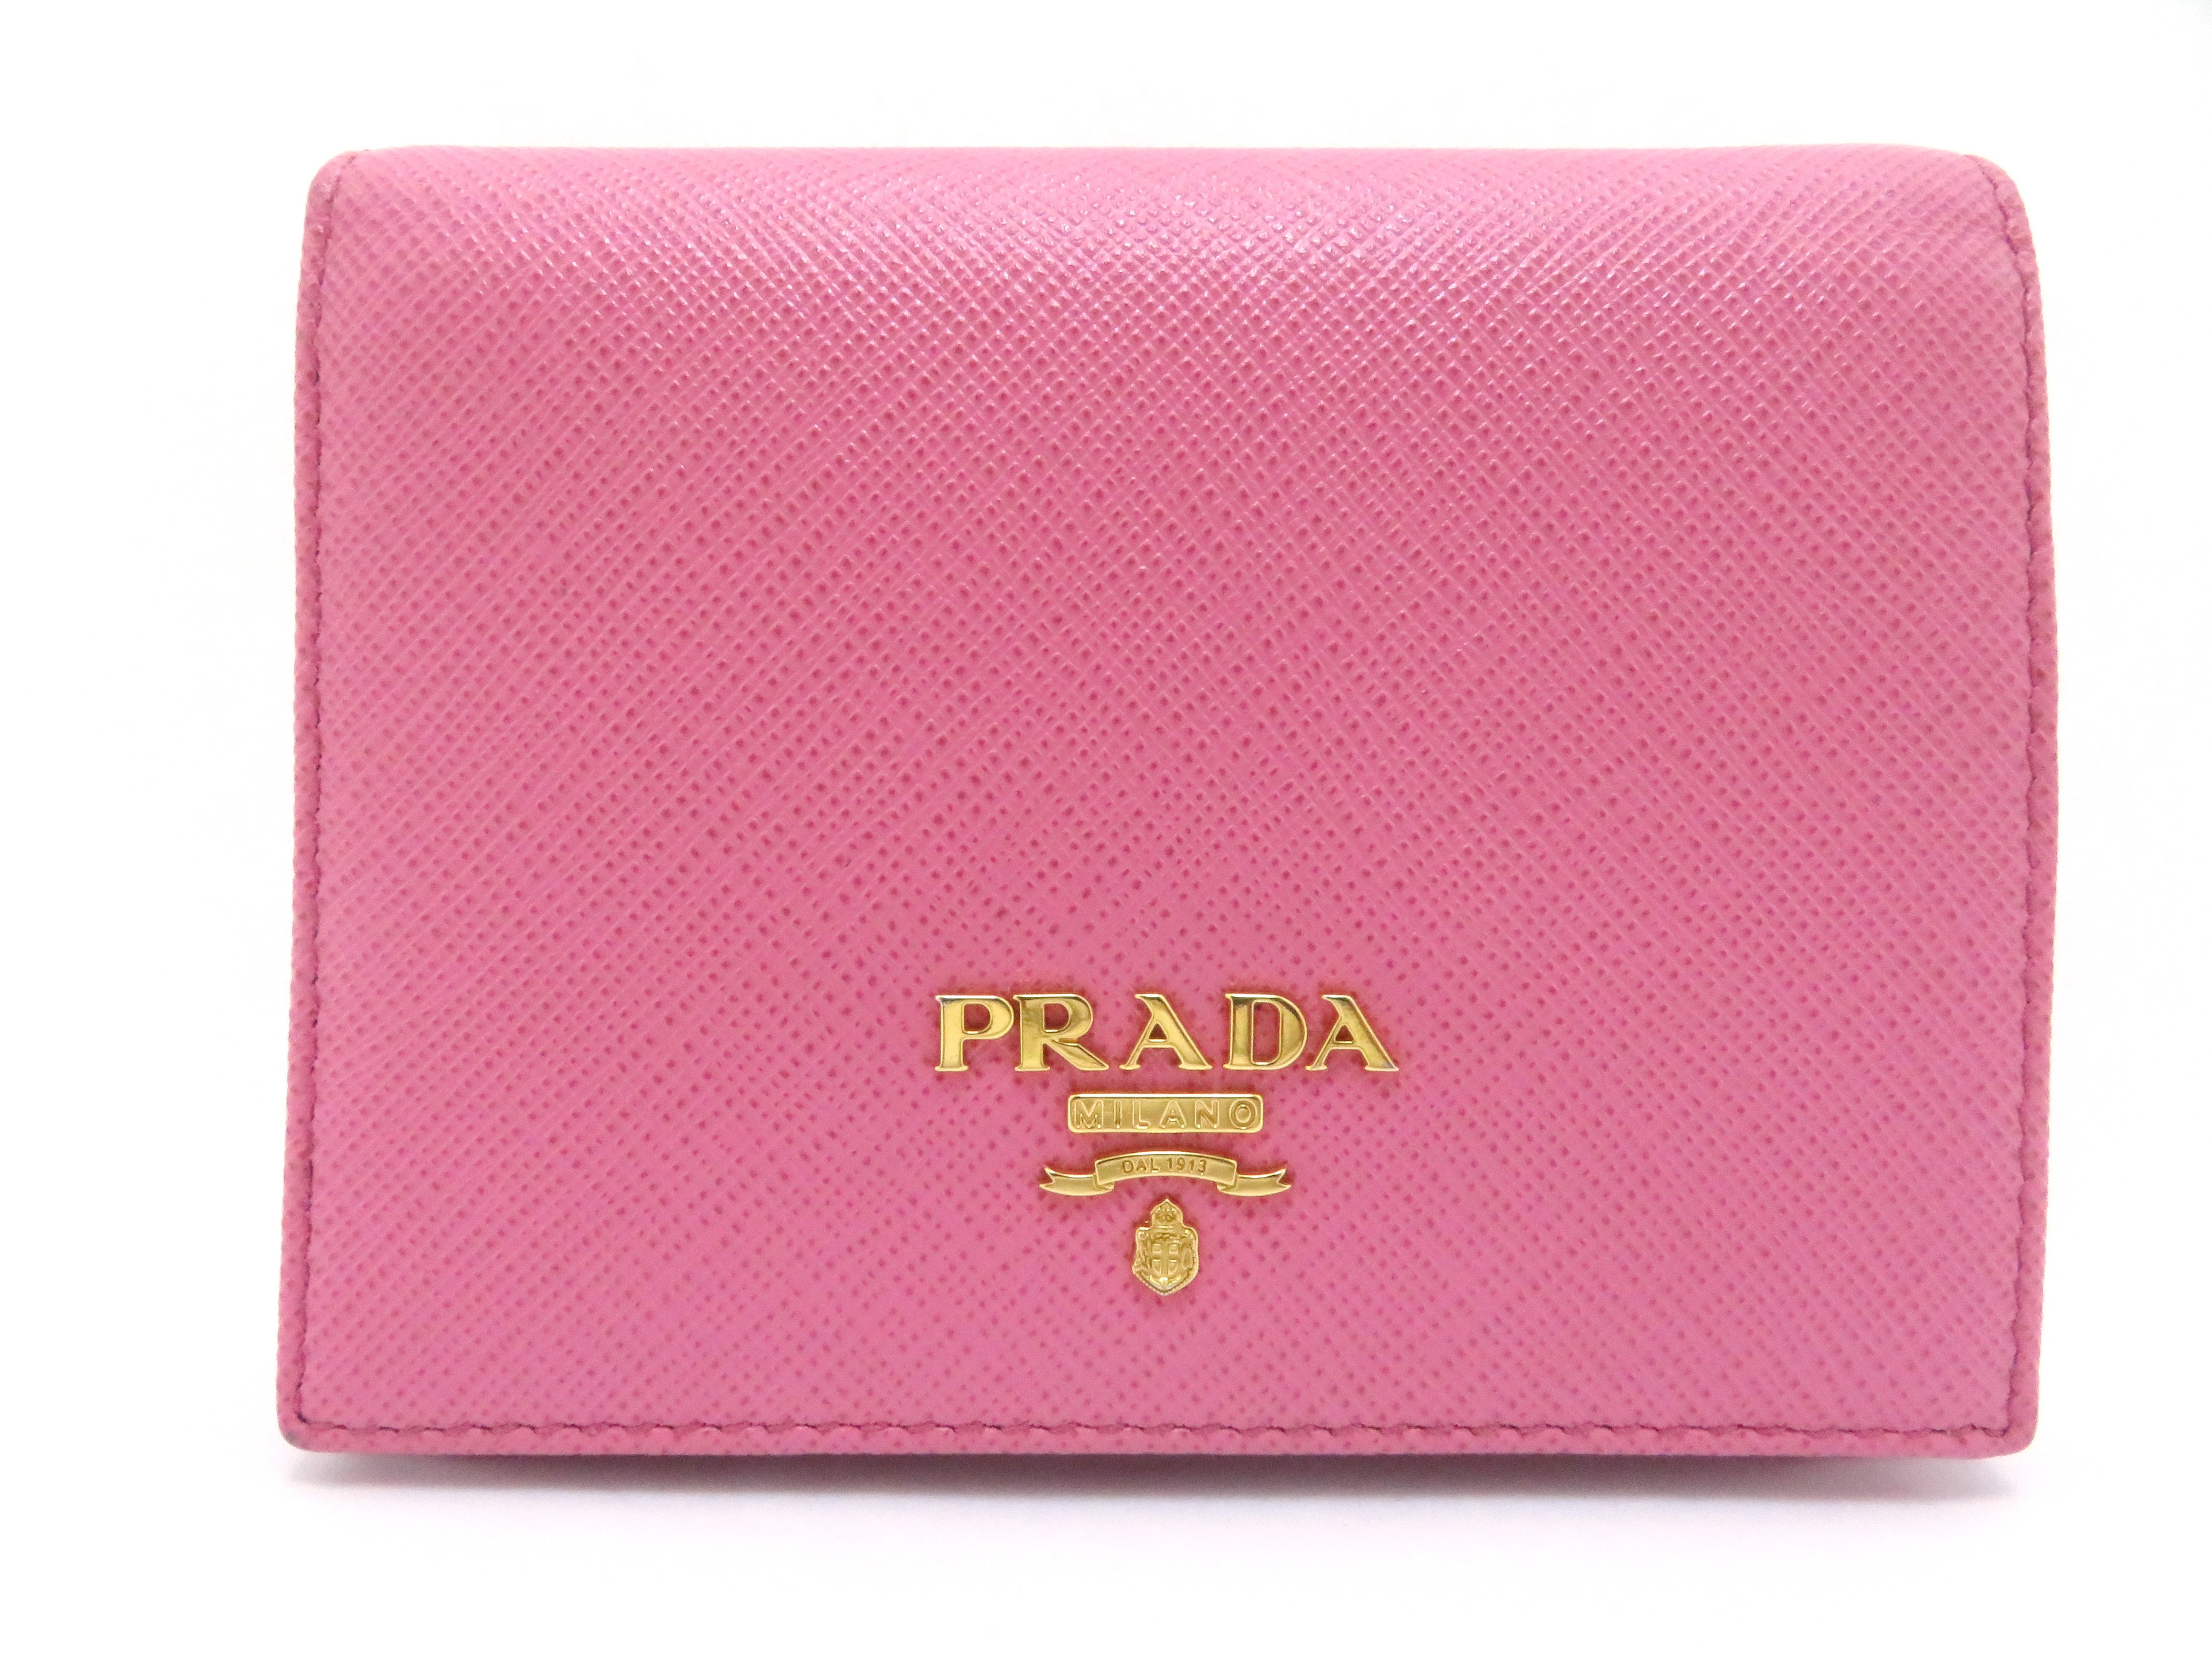 プラダ ピンク 財布